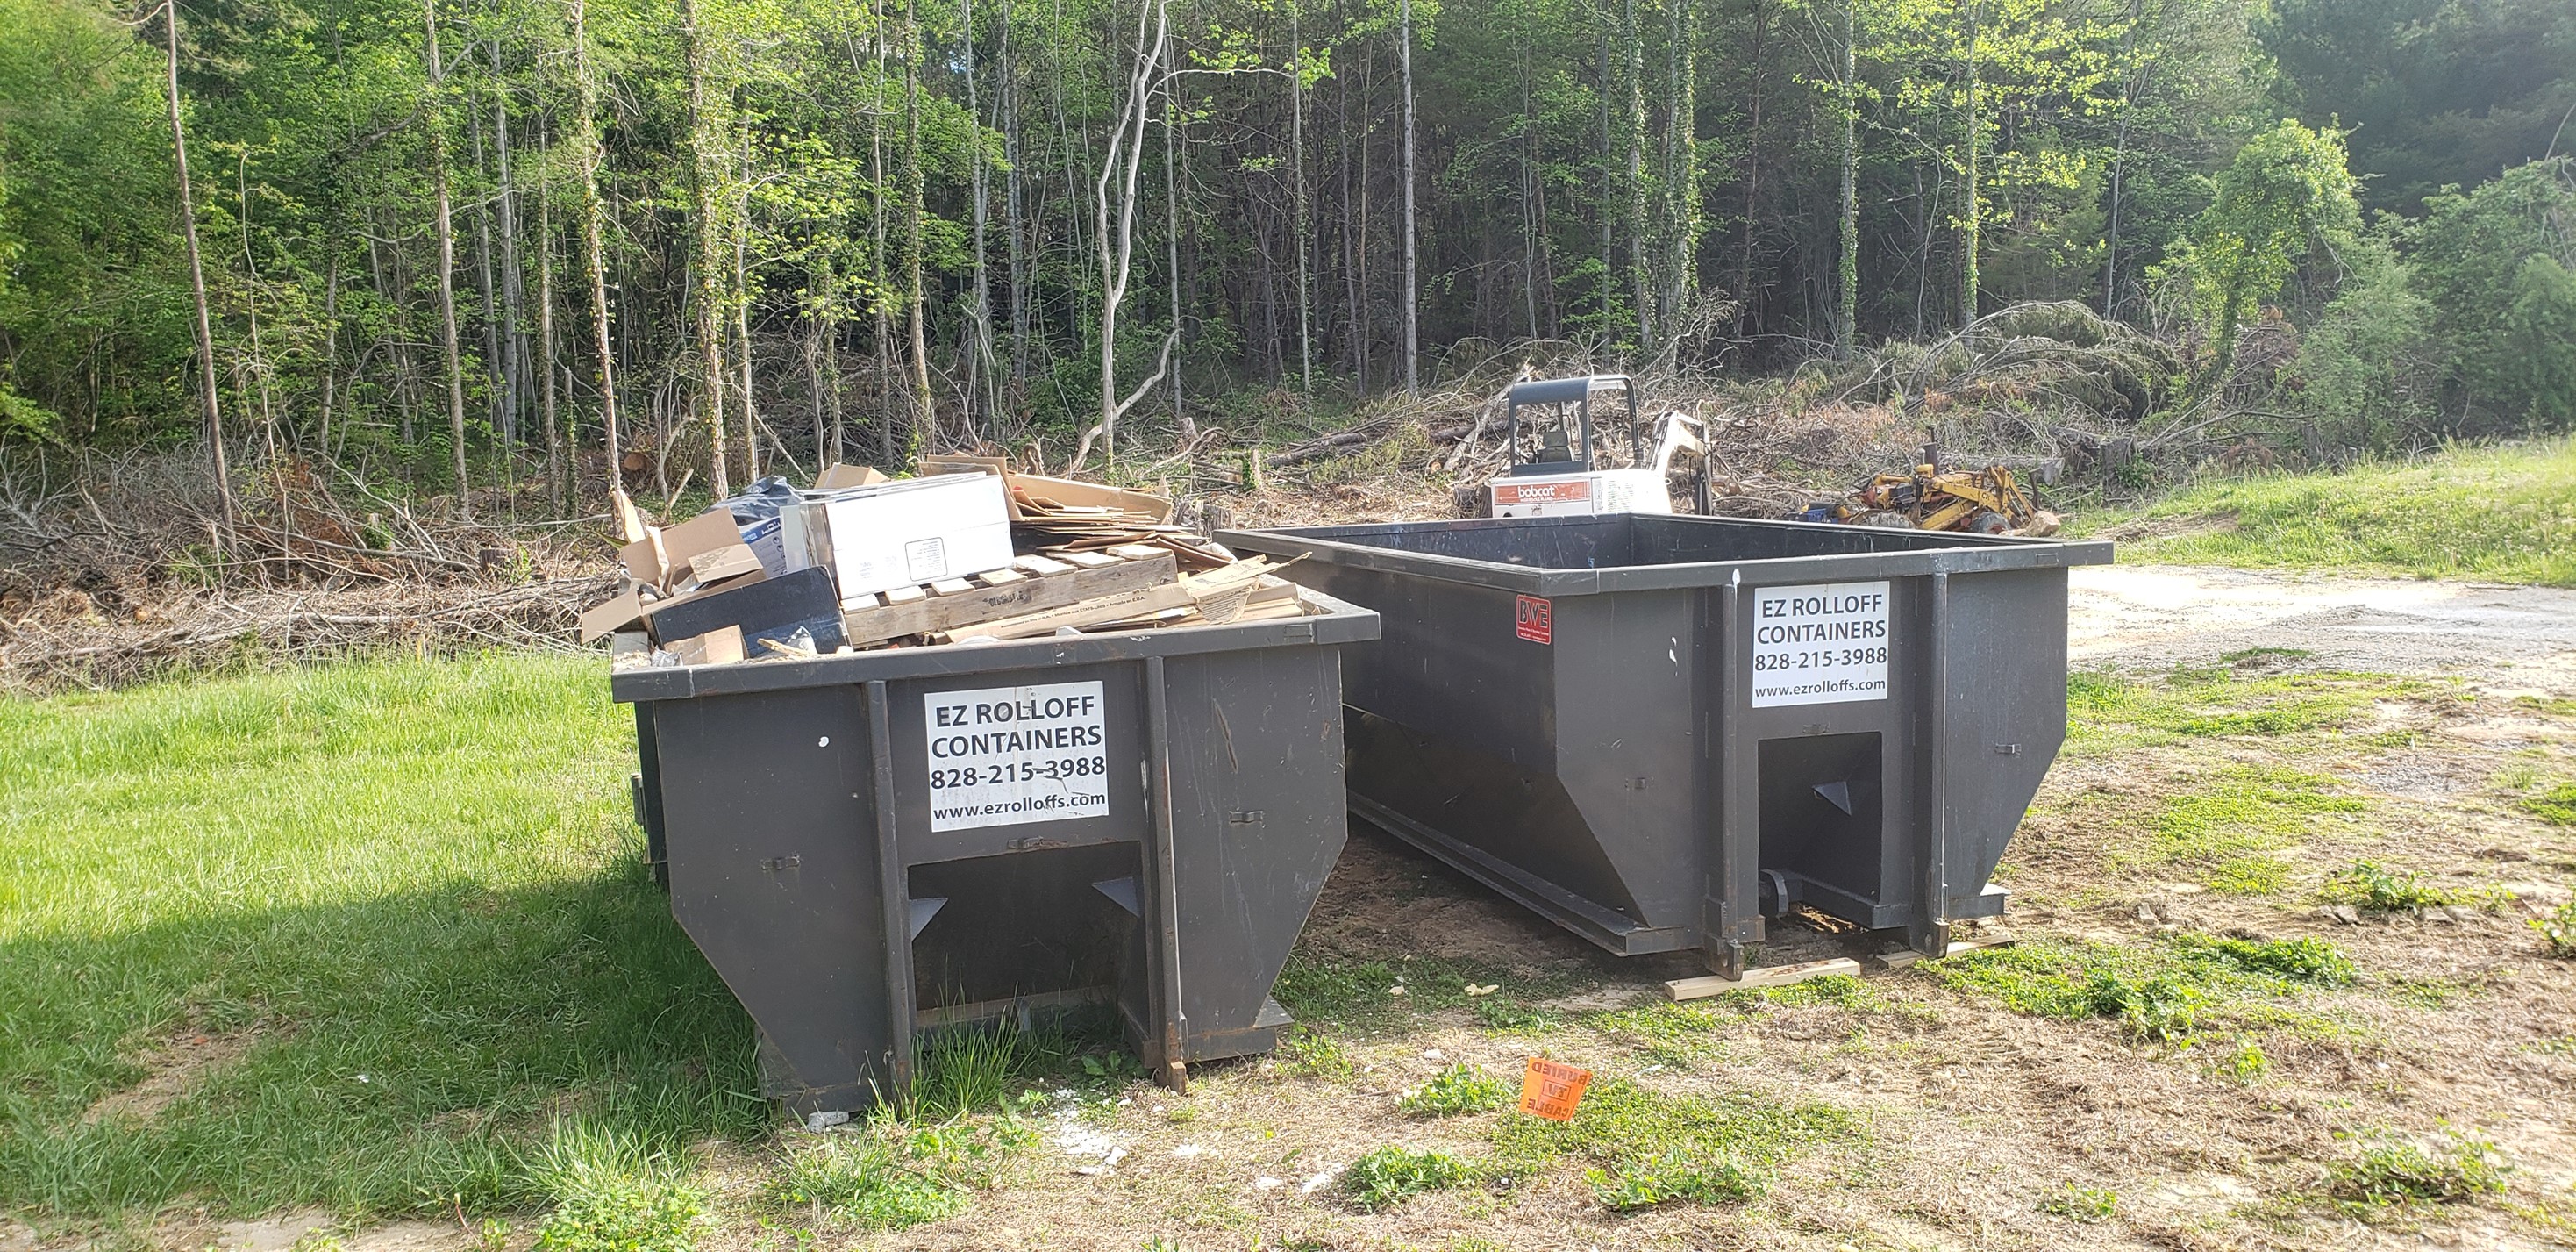 Dumpster Rental Asheville | Ez Rolloff Containers, Asheville, NC